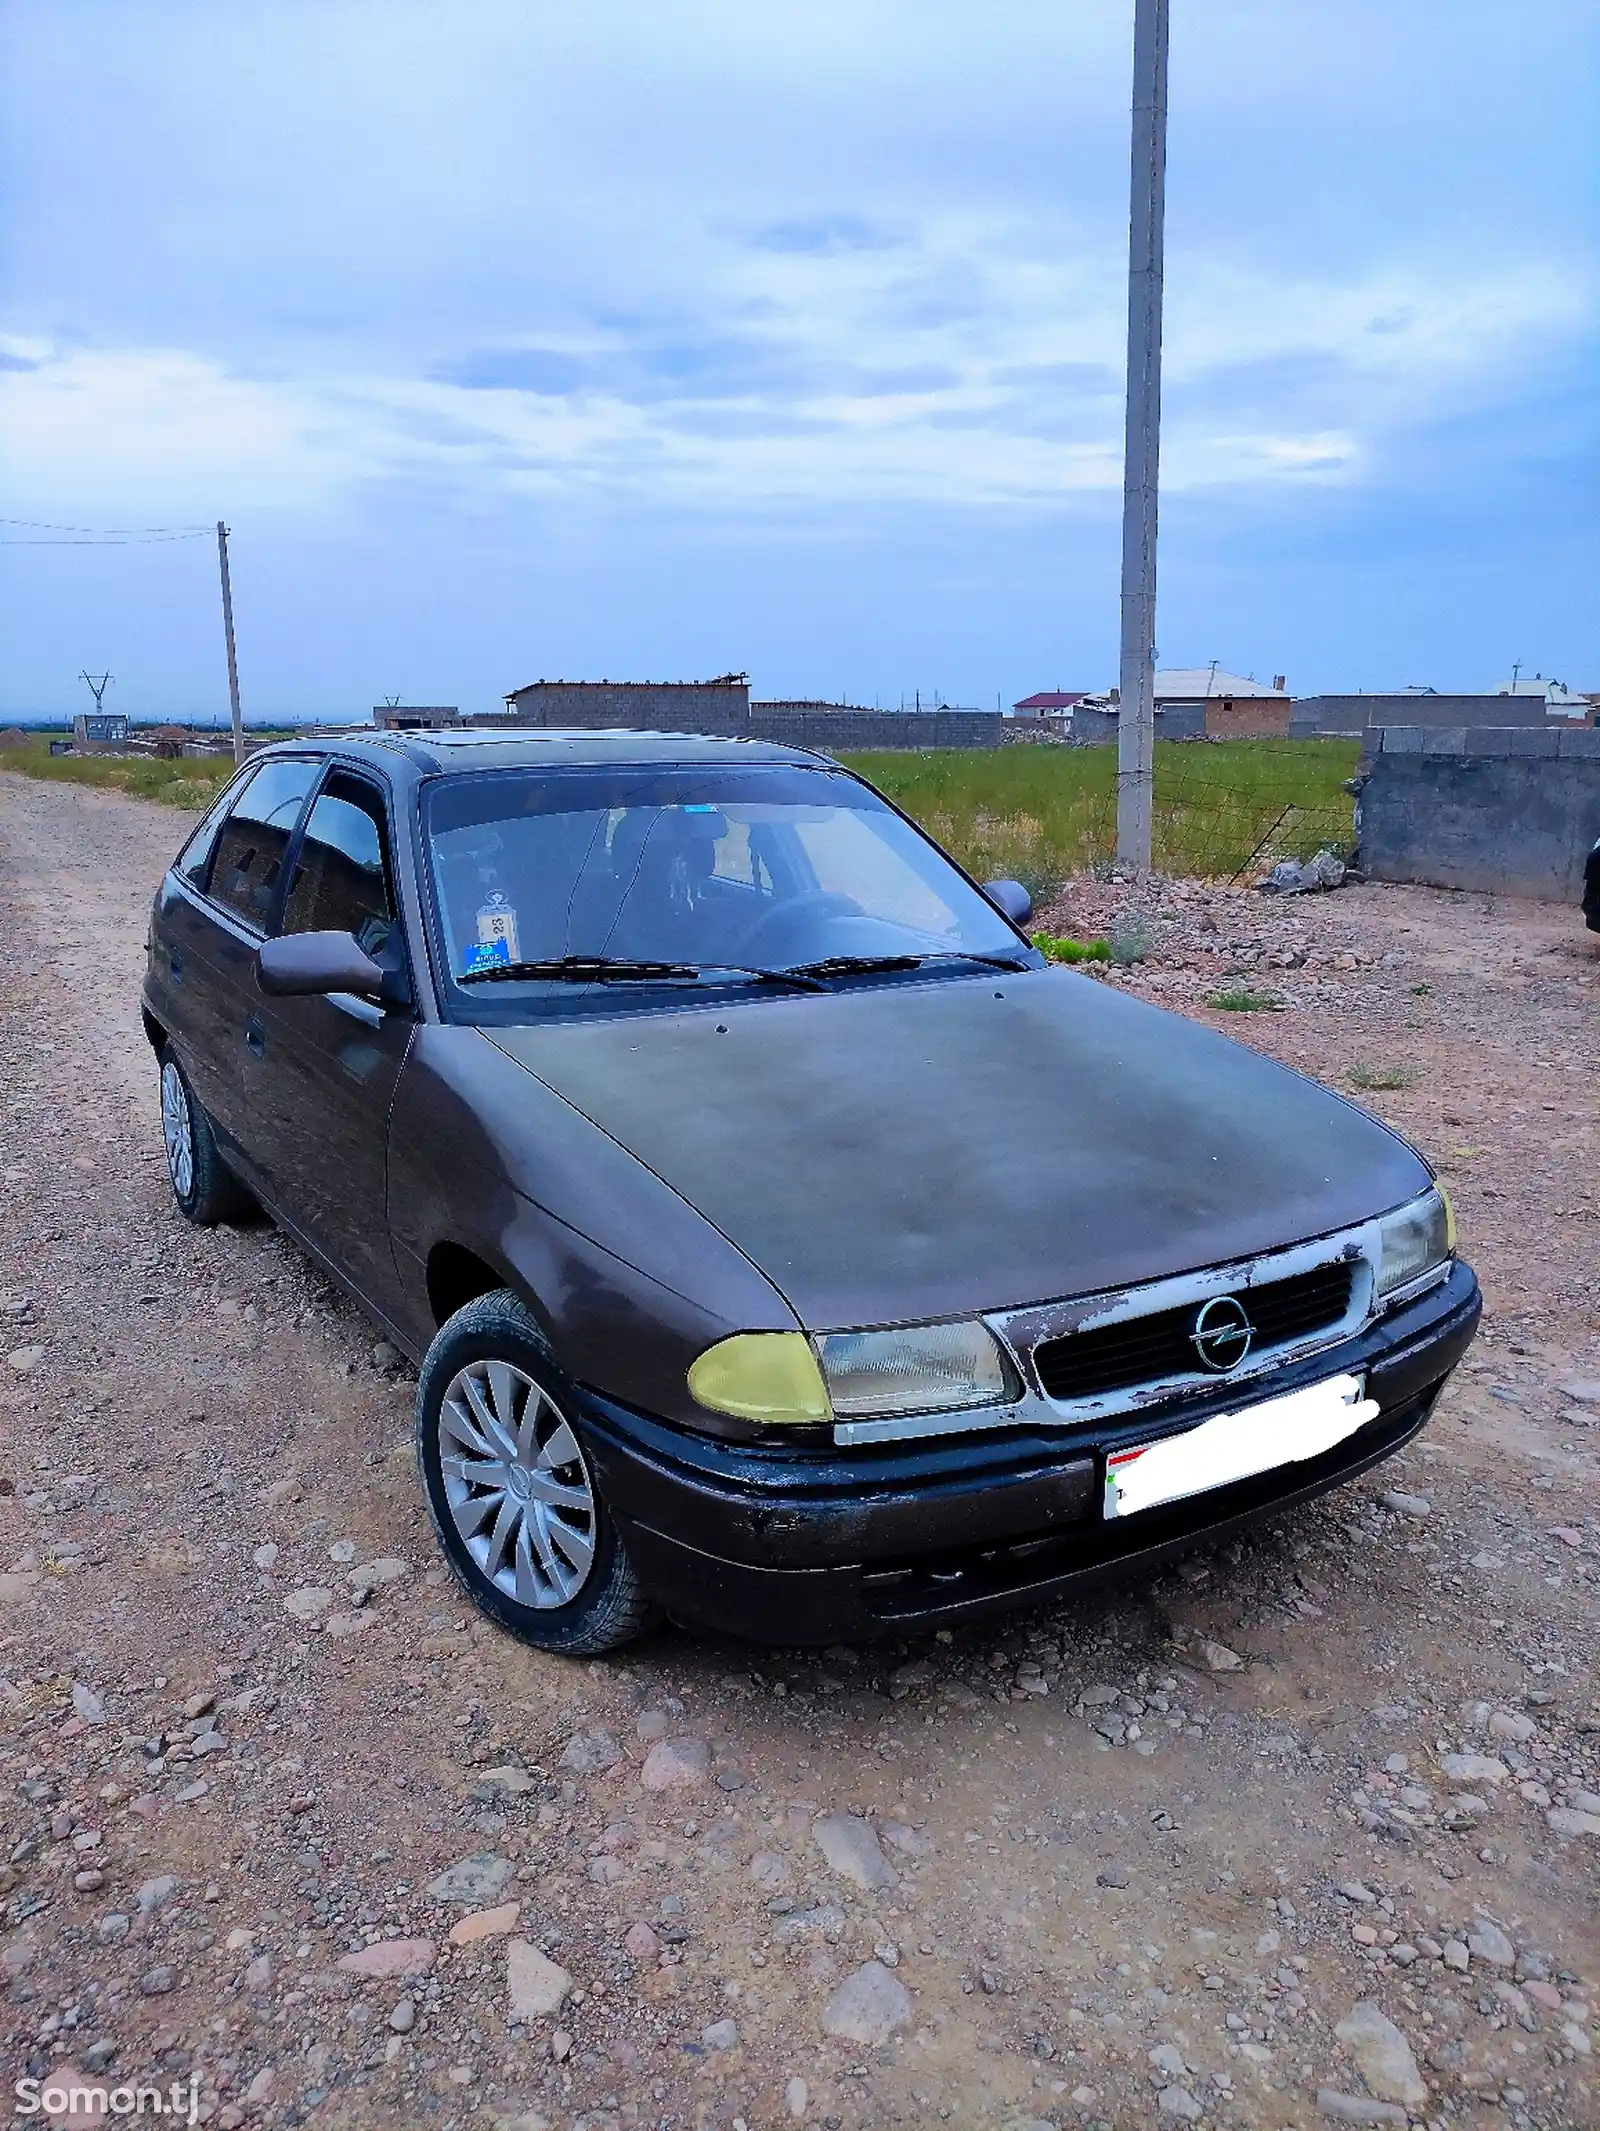 Opel Astra F, 1993-1